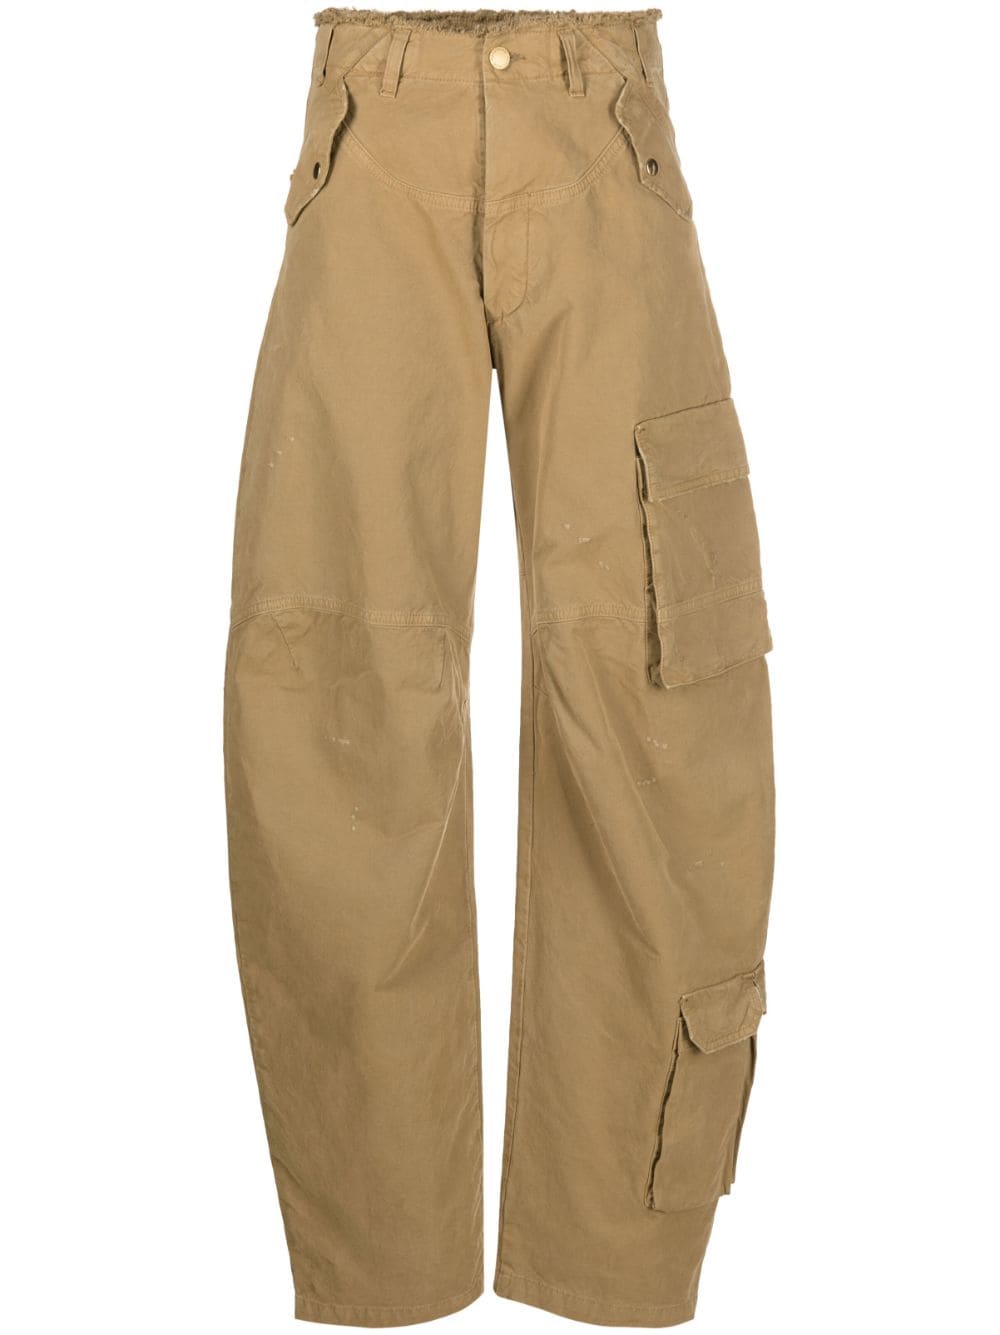 DARKPARK Rosalind cotton cargo trousers - Neutrals